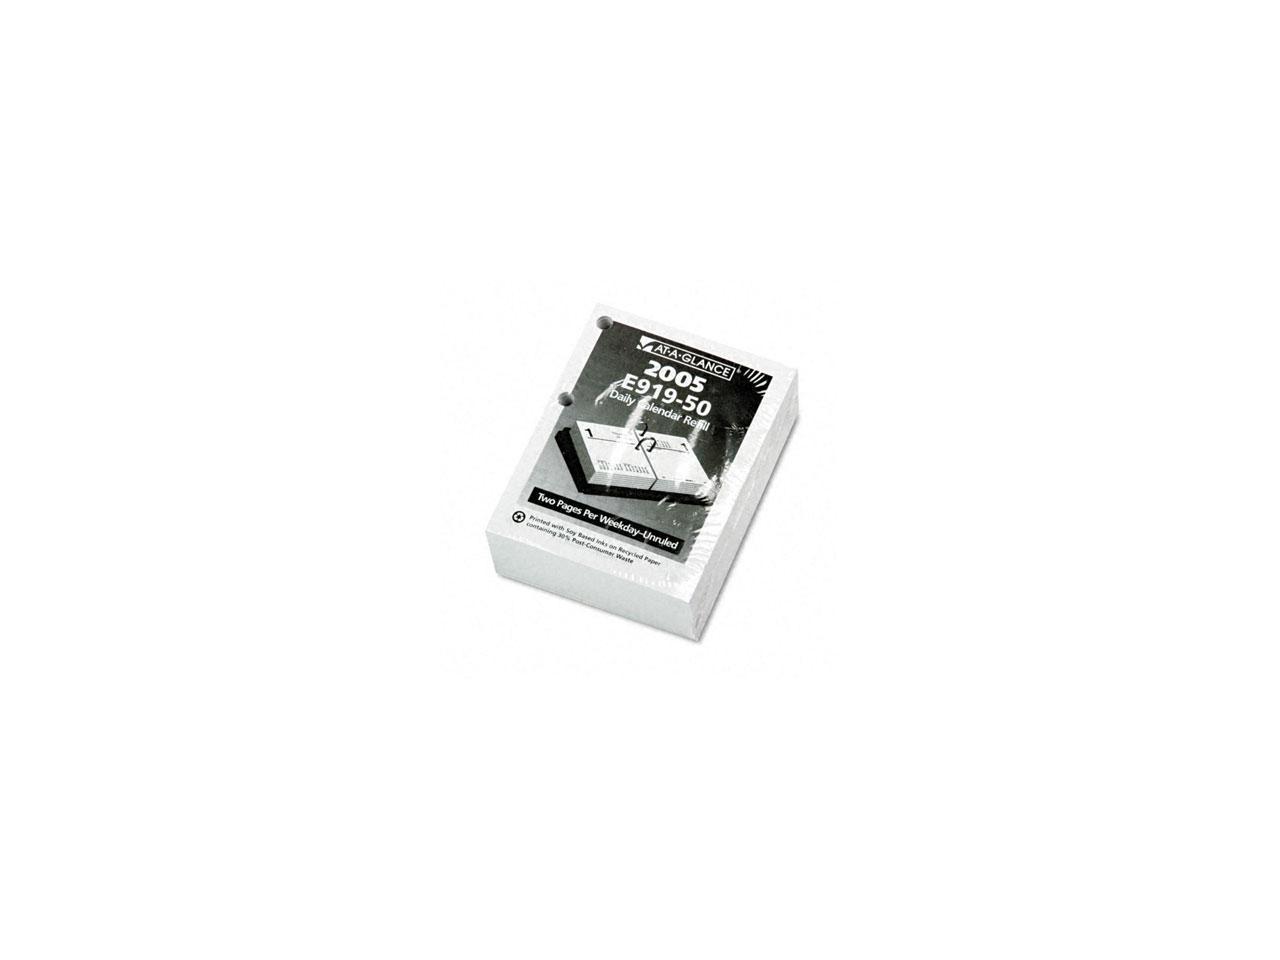 ATAGLANCE E91950 Recycled Compact Desk Calendar Refill 3" x 3 3/4